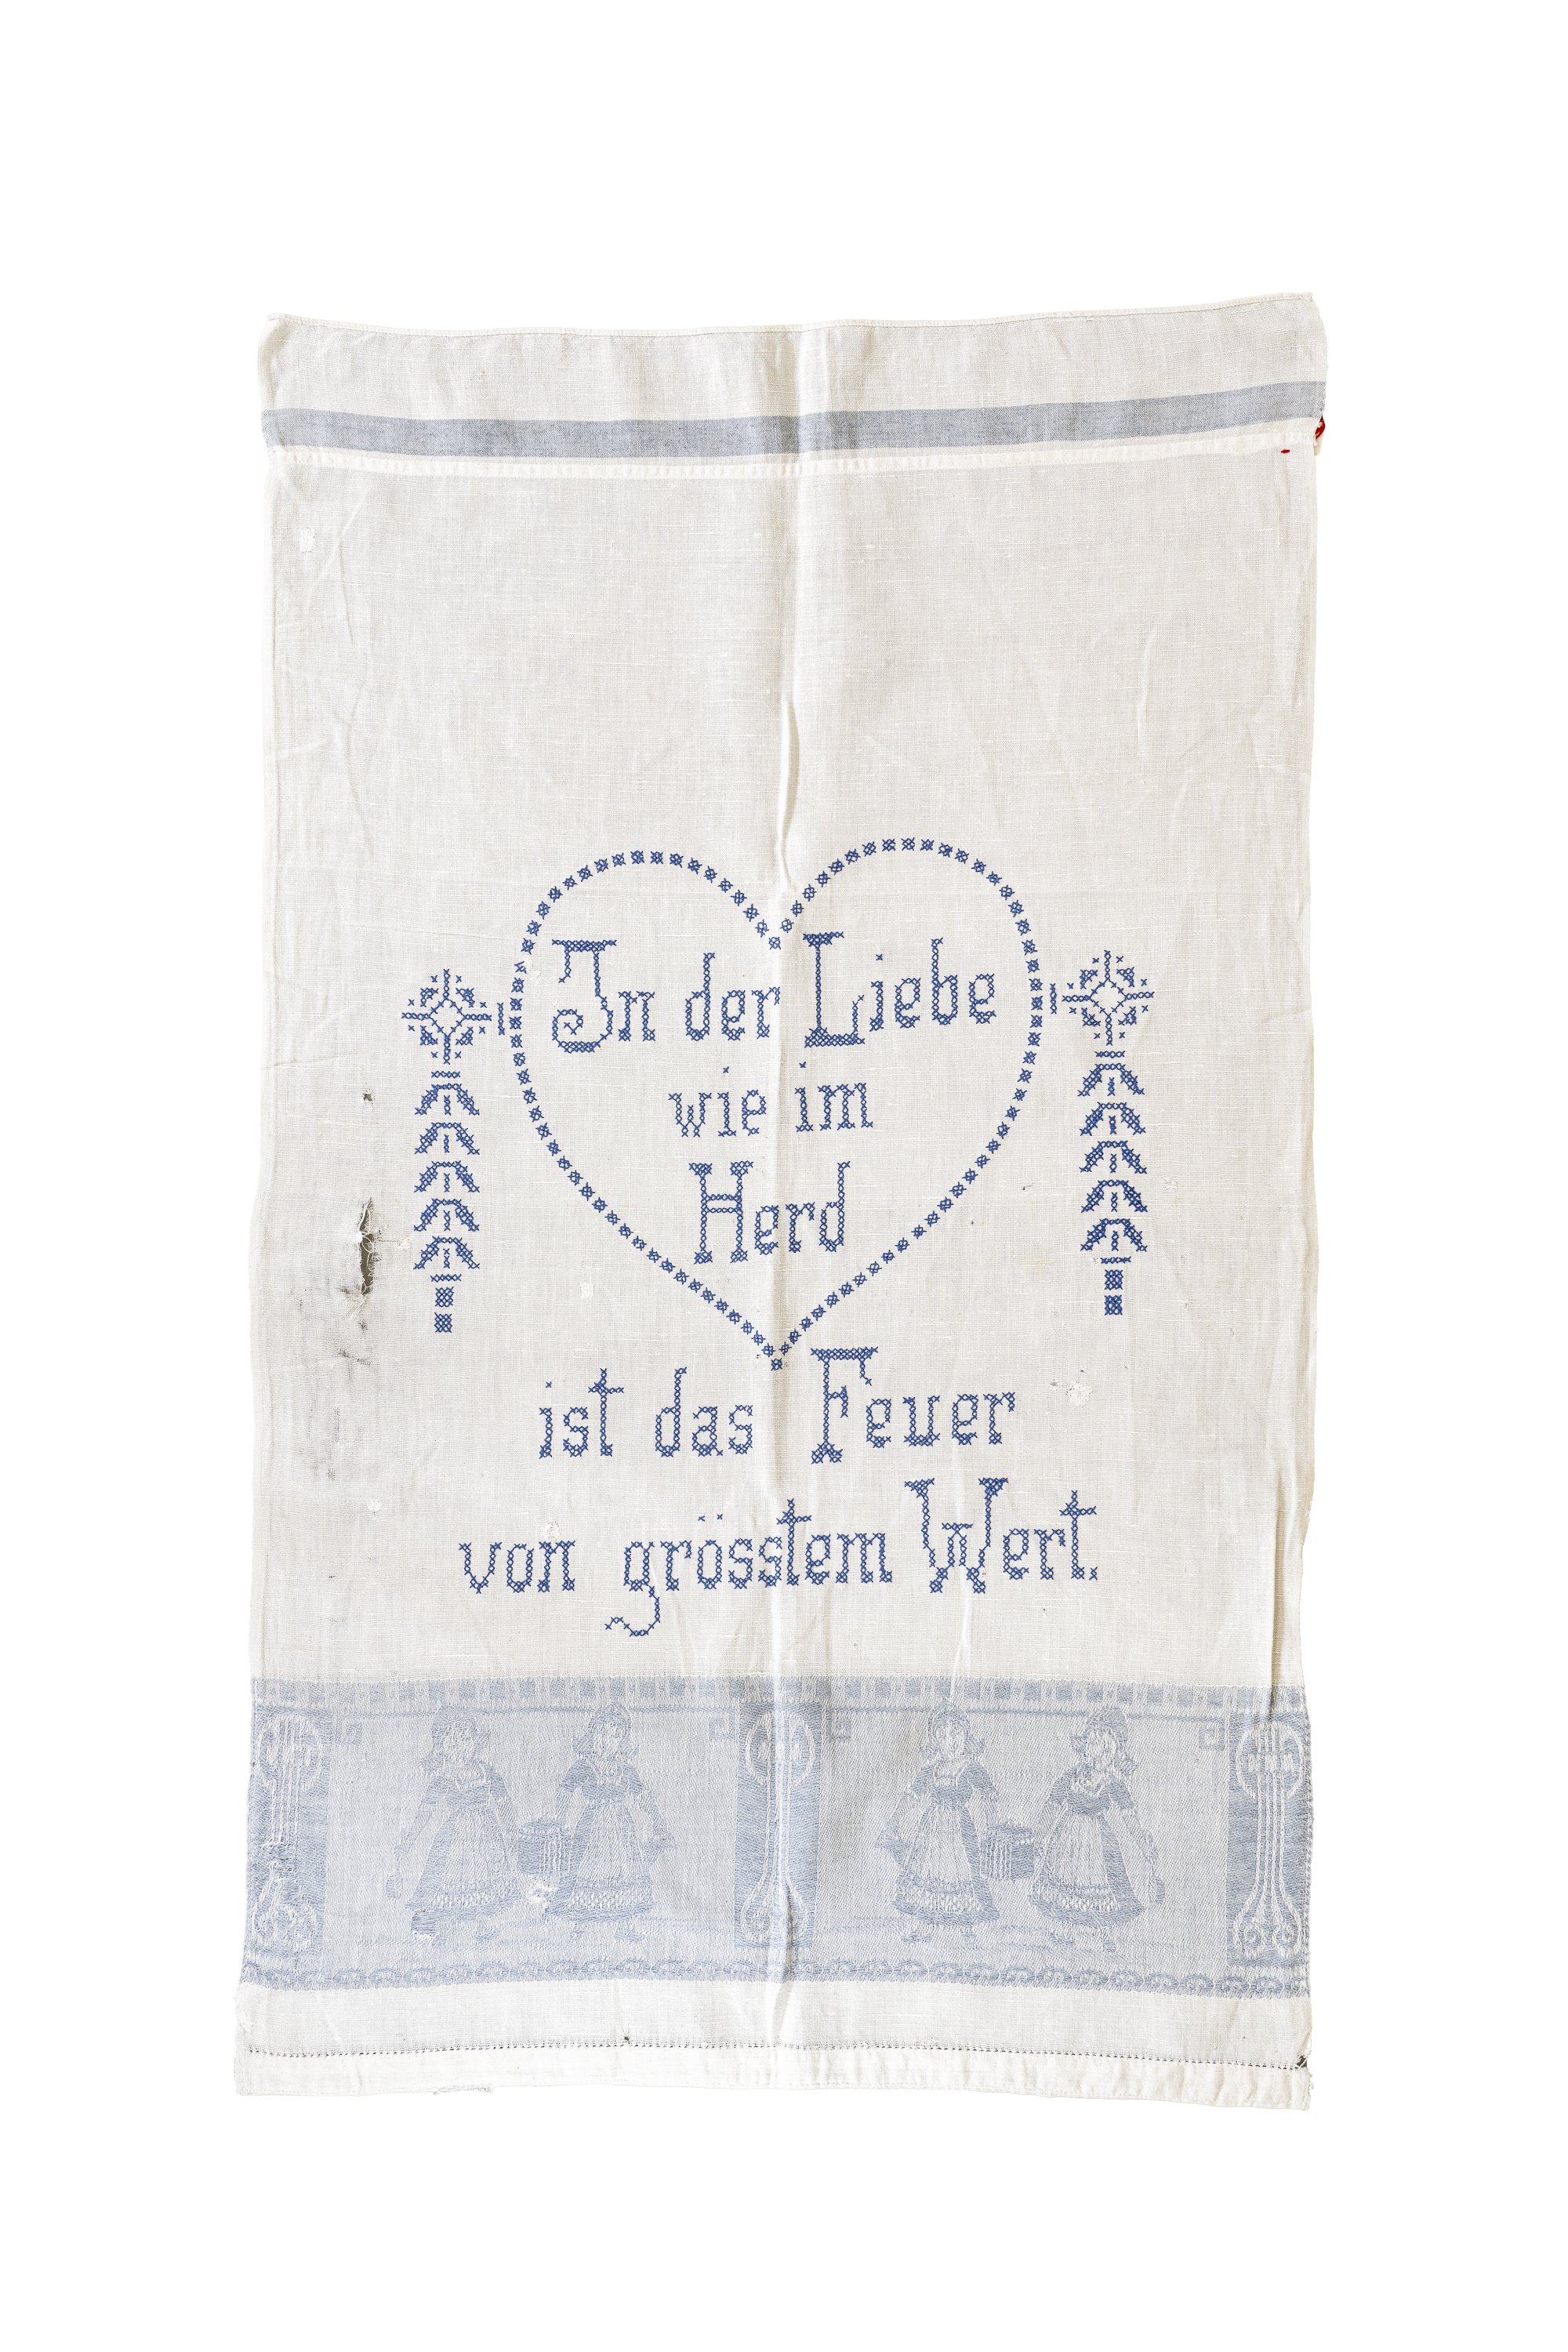 Spruchtuch: In der Liebe wie im Herd ist das Feuer von größtem Wert (Museum Abtei Liesborn des Kreises Warendorf CC BY-NC-SA)